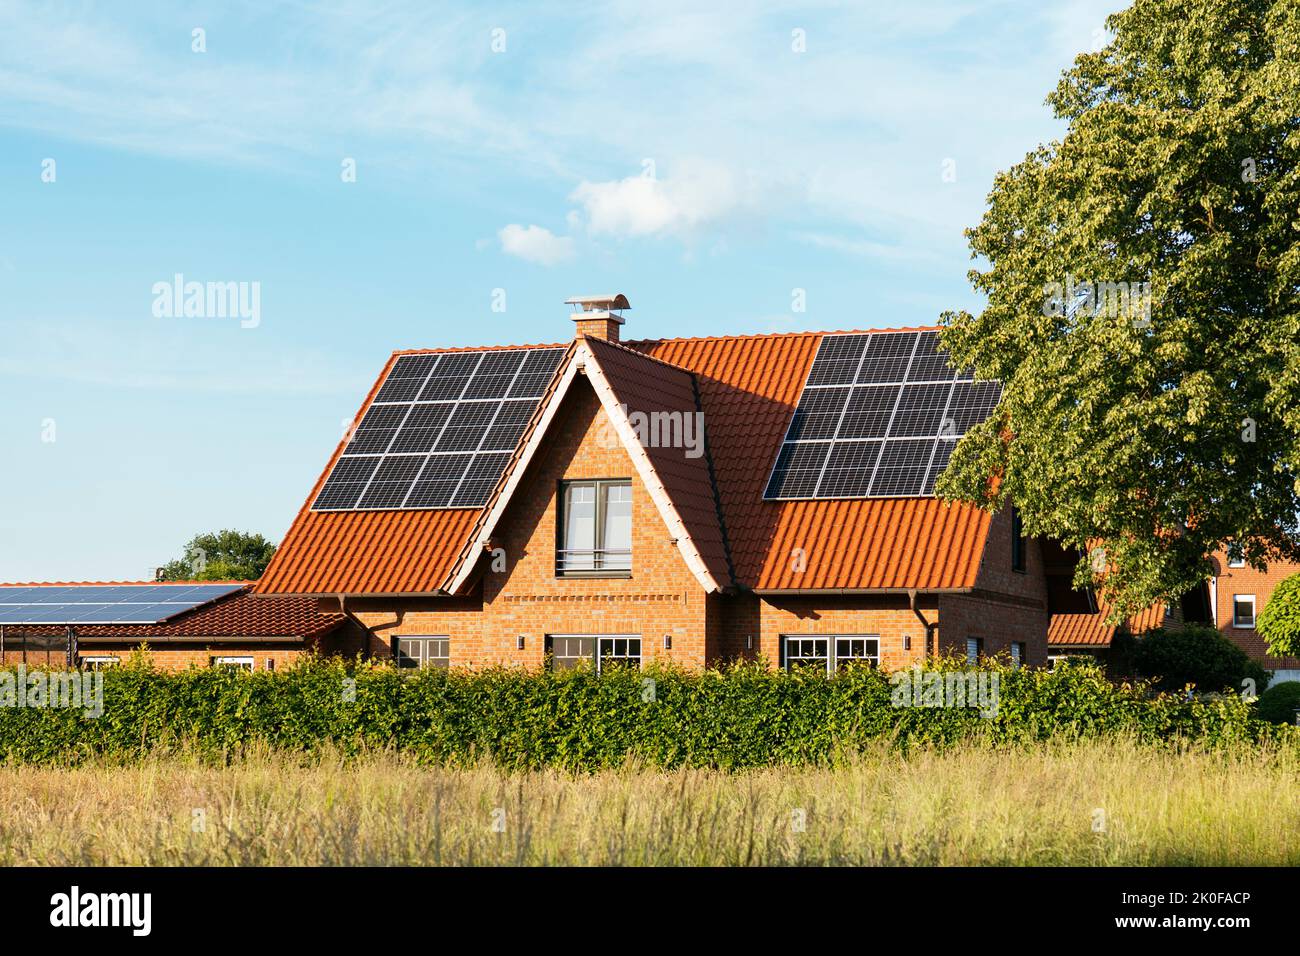 Maison individuelle avec panneaux solaires sur le toit à Petershagen, Allemagne. Banque D'Images